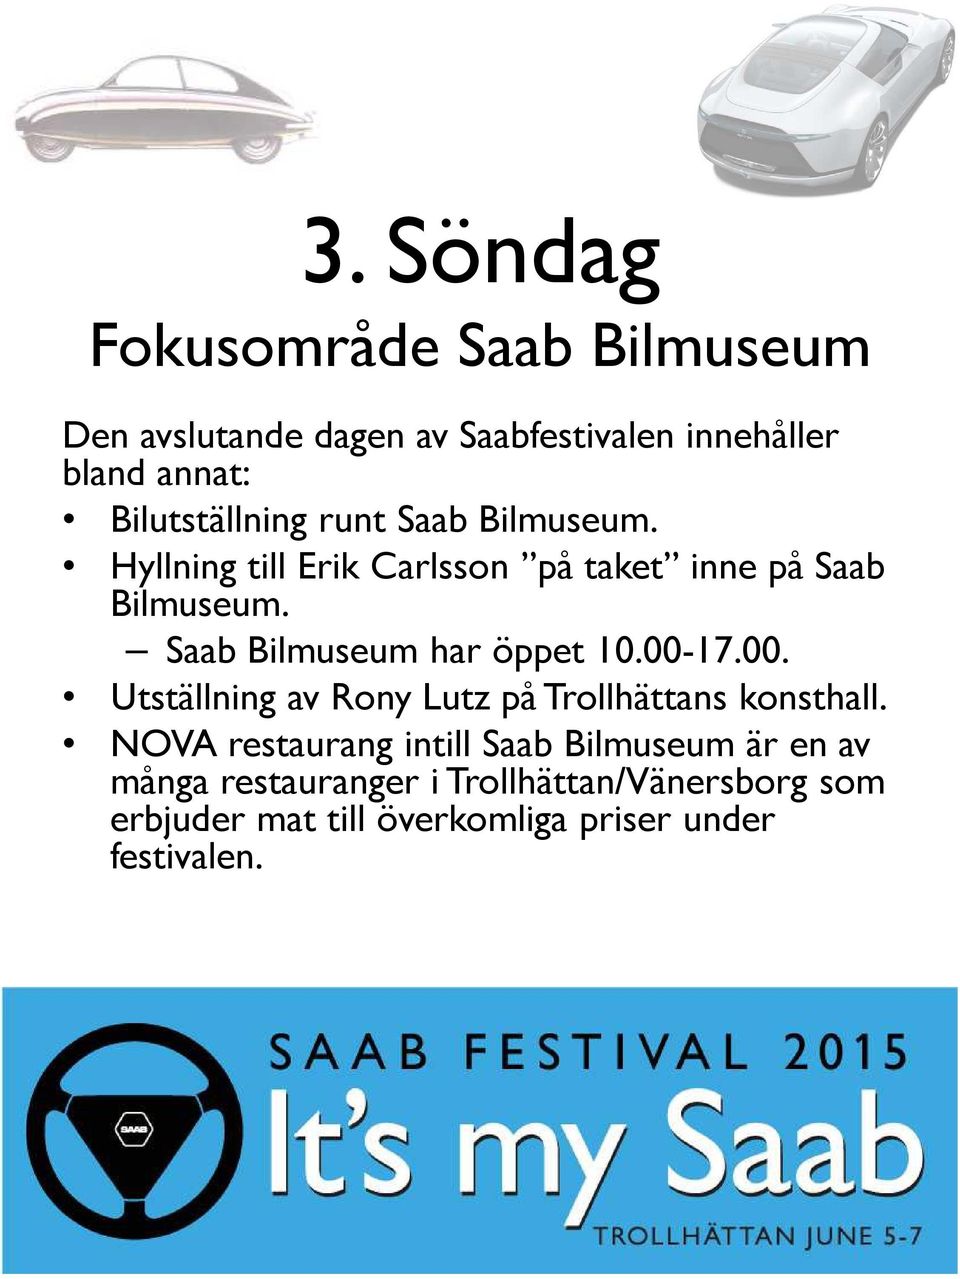 Saab Bilmuseum har öppet 10.00-17.00. Utställning av Rony Lutz på Trollhättans konsthall.